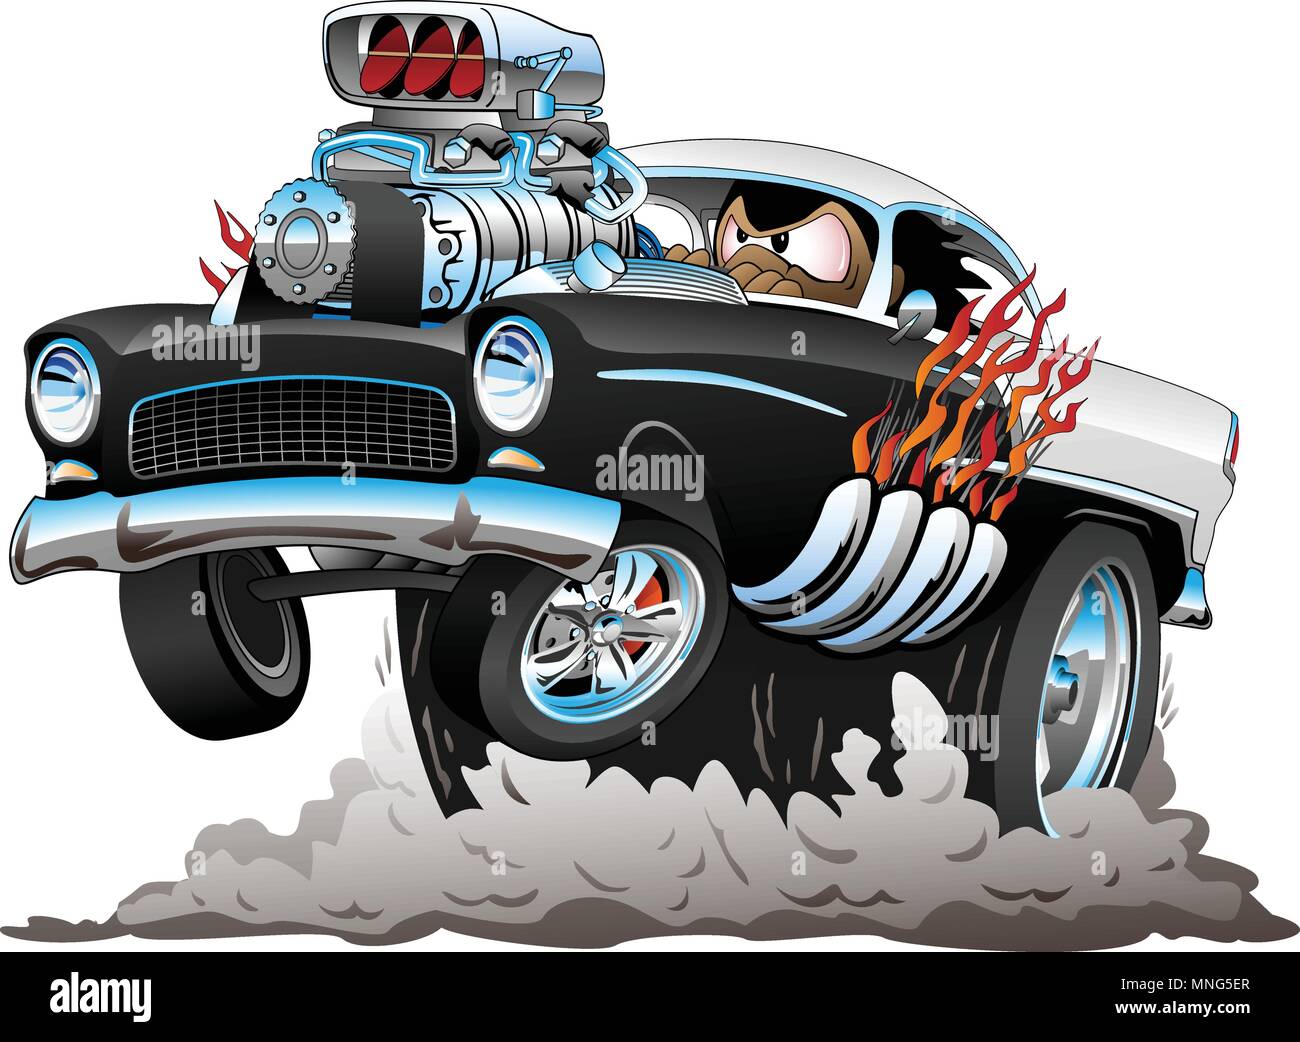 Classic American style années 50 Hot Rod Amusant Voitures Cartoon avec gros moteur, de flammes, de fumer les pneus, faire un cabré, Vector Illustration Illustration de Vecteur